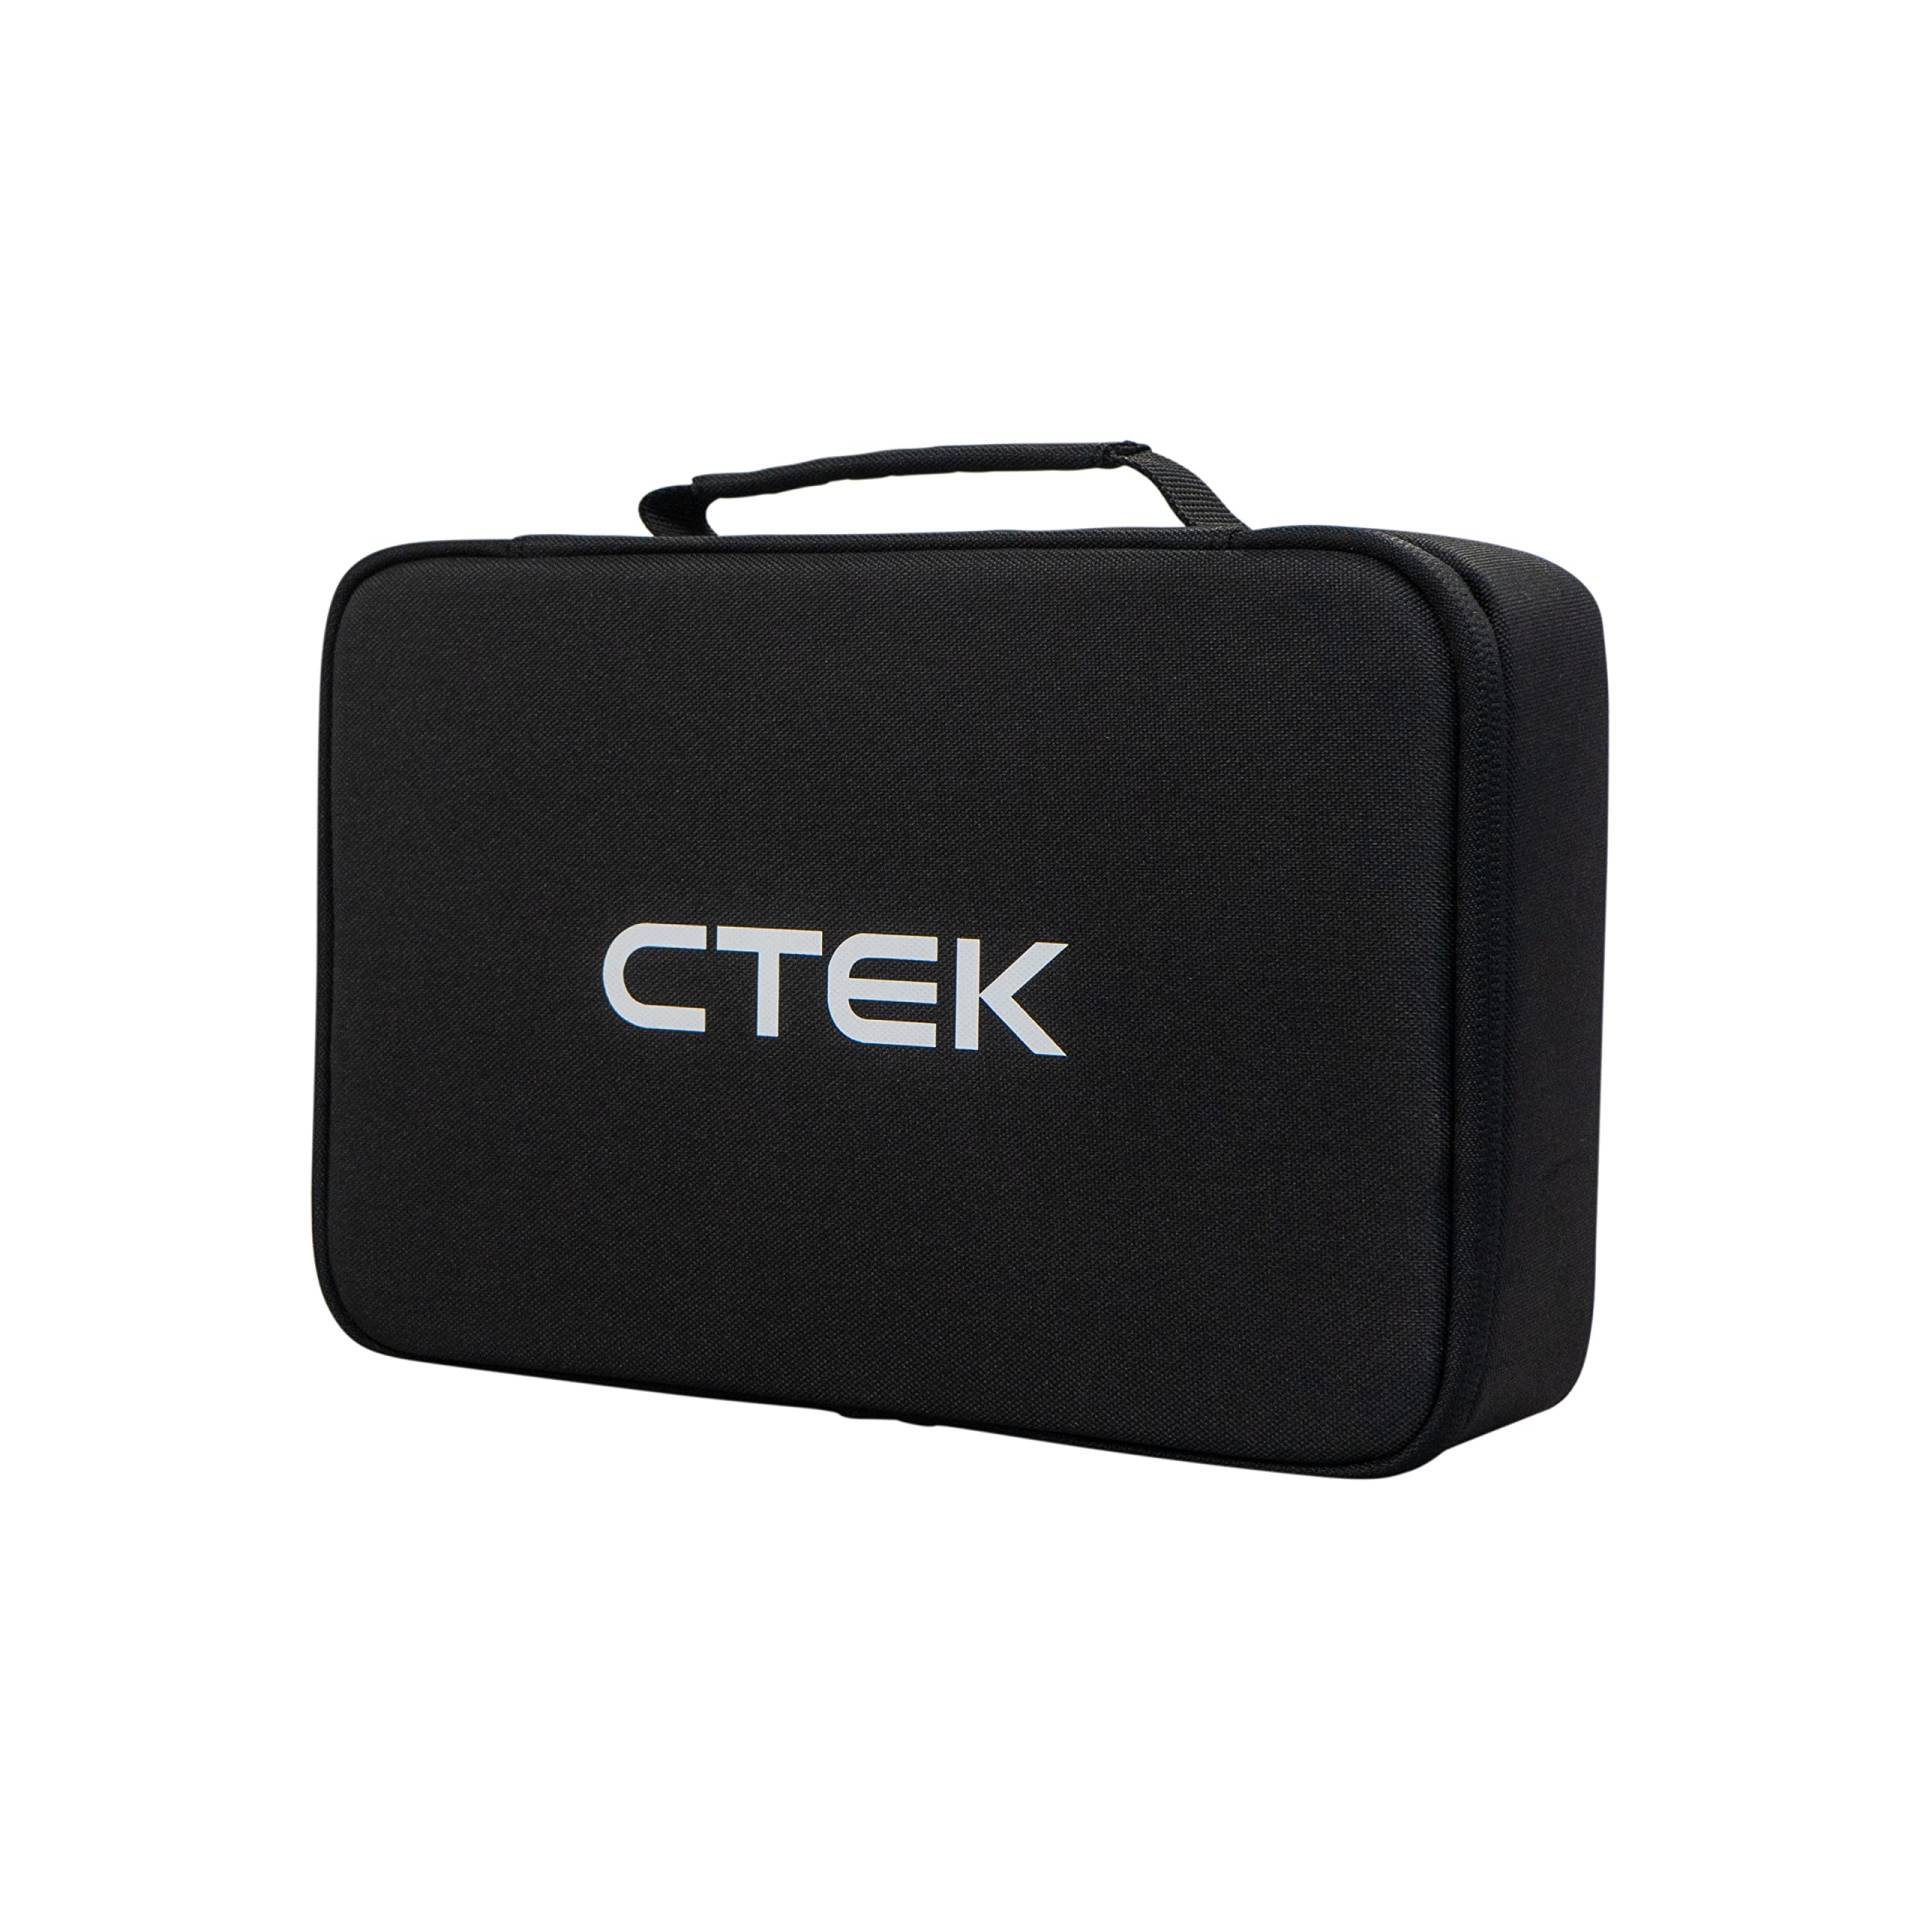 CTEK CS STORAGE CASE, tragbare Aufbewahrung für Ihr CTEK Ladegerät, sicher, langlebig, leicht, einfach zu tragen, robust und wasserfest mit Tragegriff für einfachen Transport von CTEK